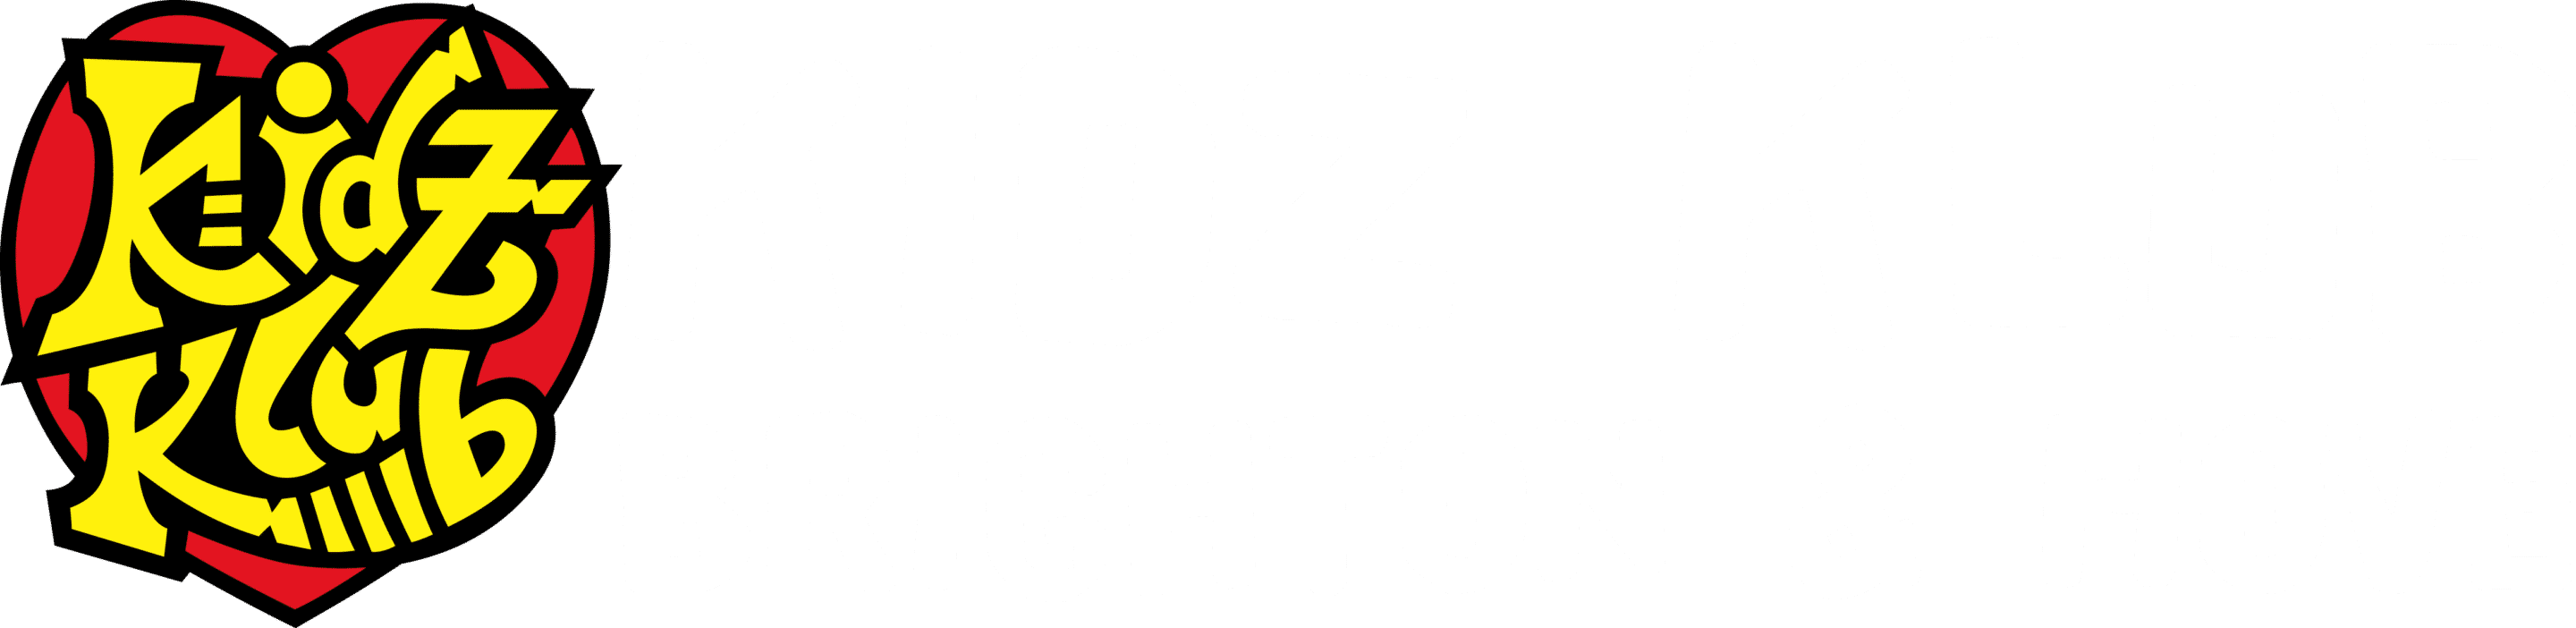 Kidz Klub Brighton & Hove